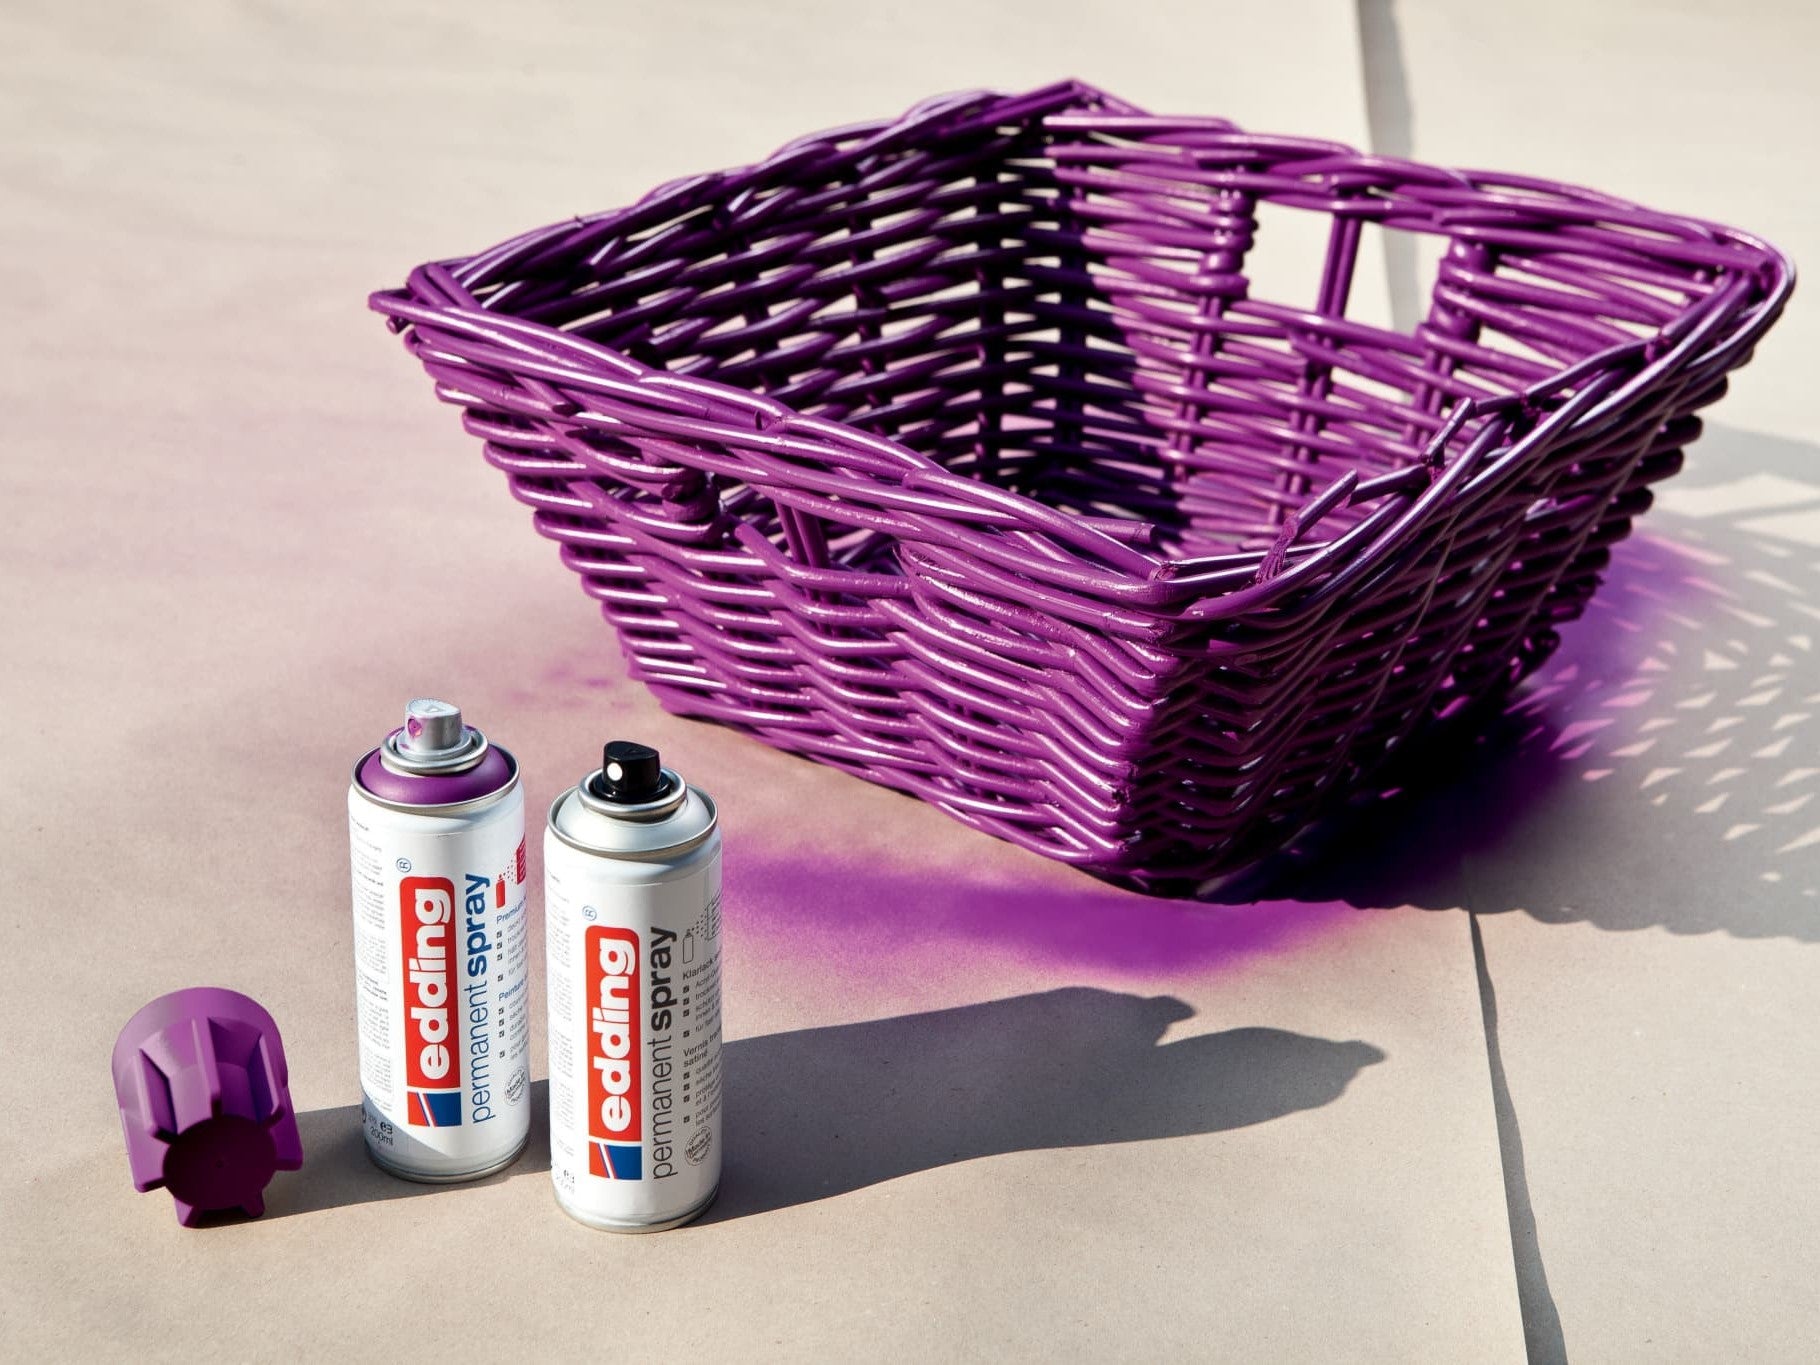 Ein violetter Weidenkorb neben zwei abgenommenen Sprühdosen „edding 5200 Permanentspray Acryllack Neon & Kräftige Farben“ und einem kräftigen Neonfarben-Spritzer im Sonnenlicht.